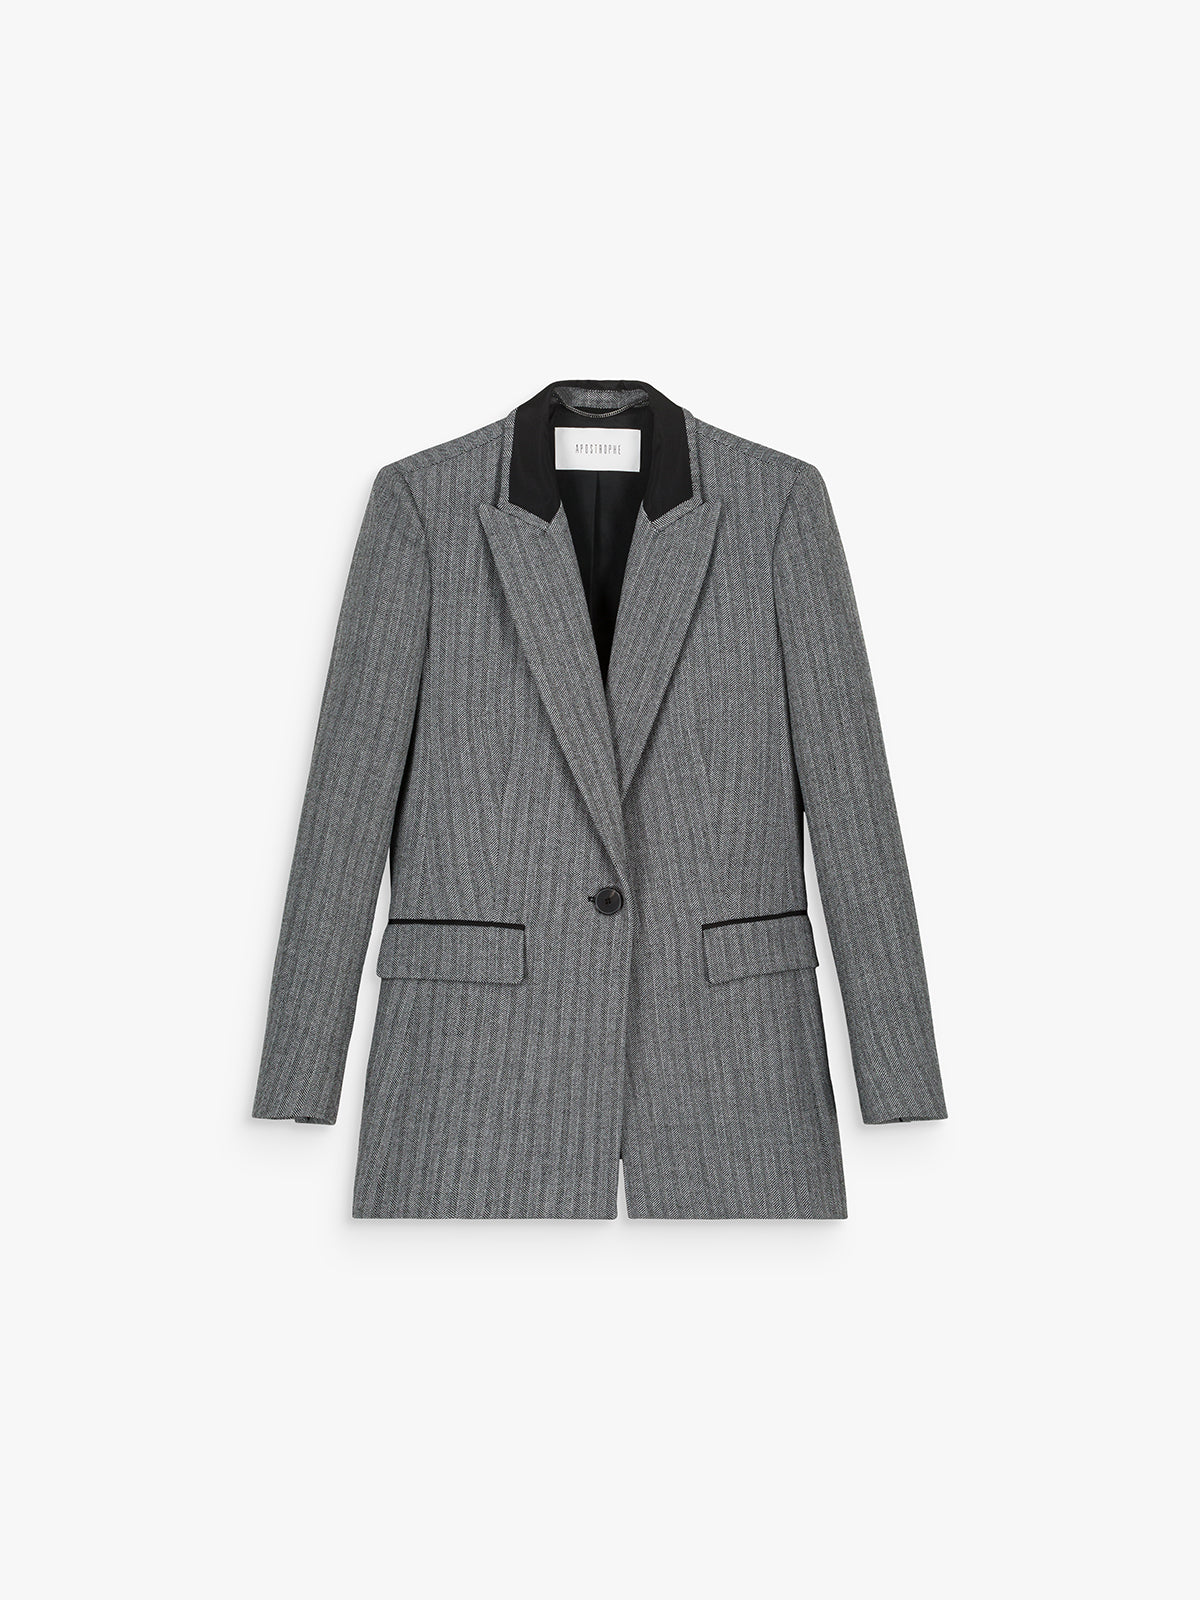 Veste cintrée blazer jacquard chevron gris détail noir sur col et poches à rabat